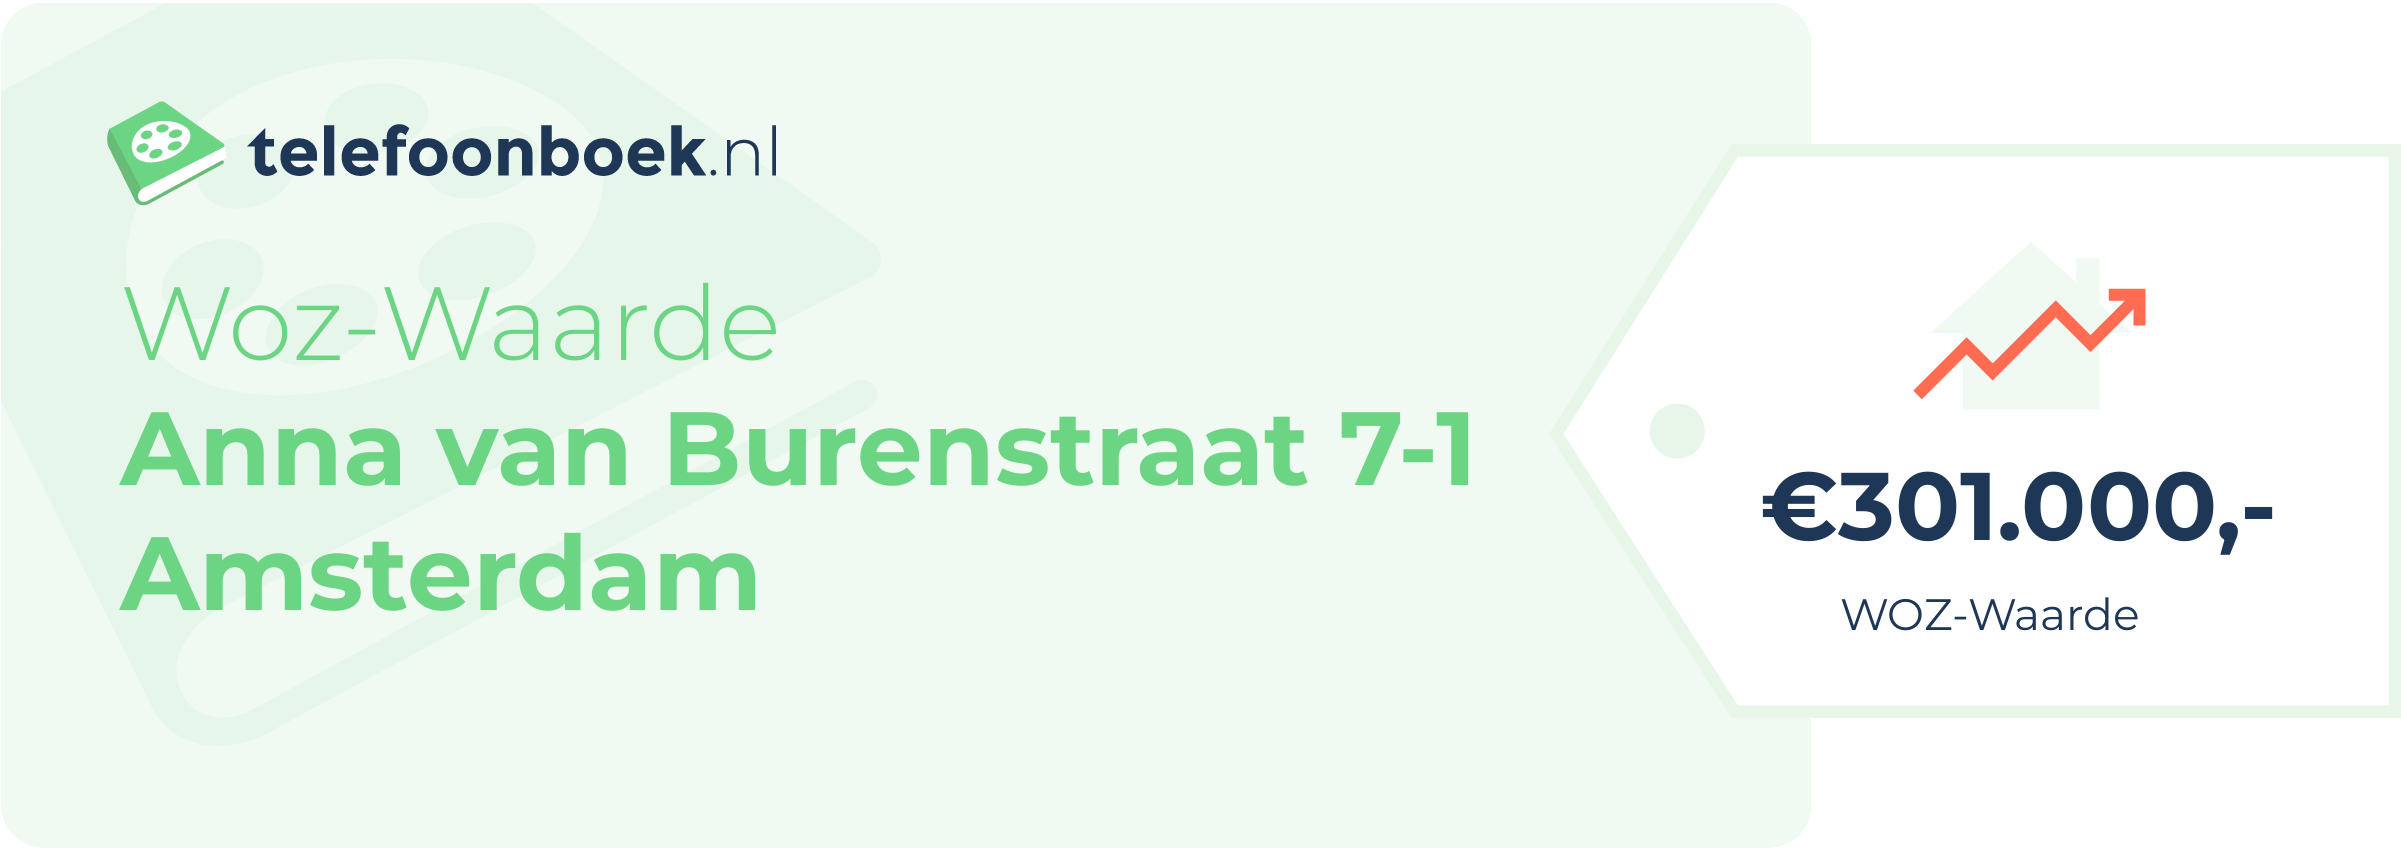 WOZ-waarde Anna Van Burenstraat 7-1 Amsterdam